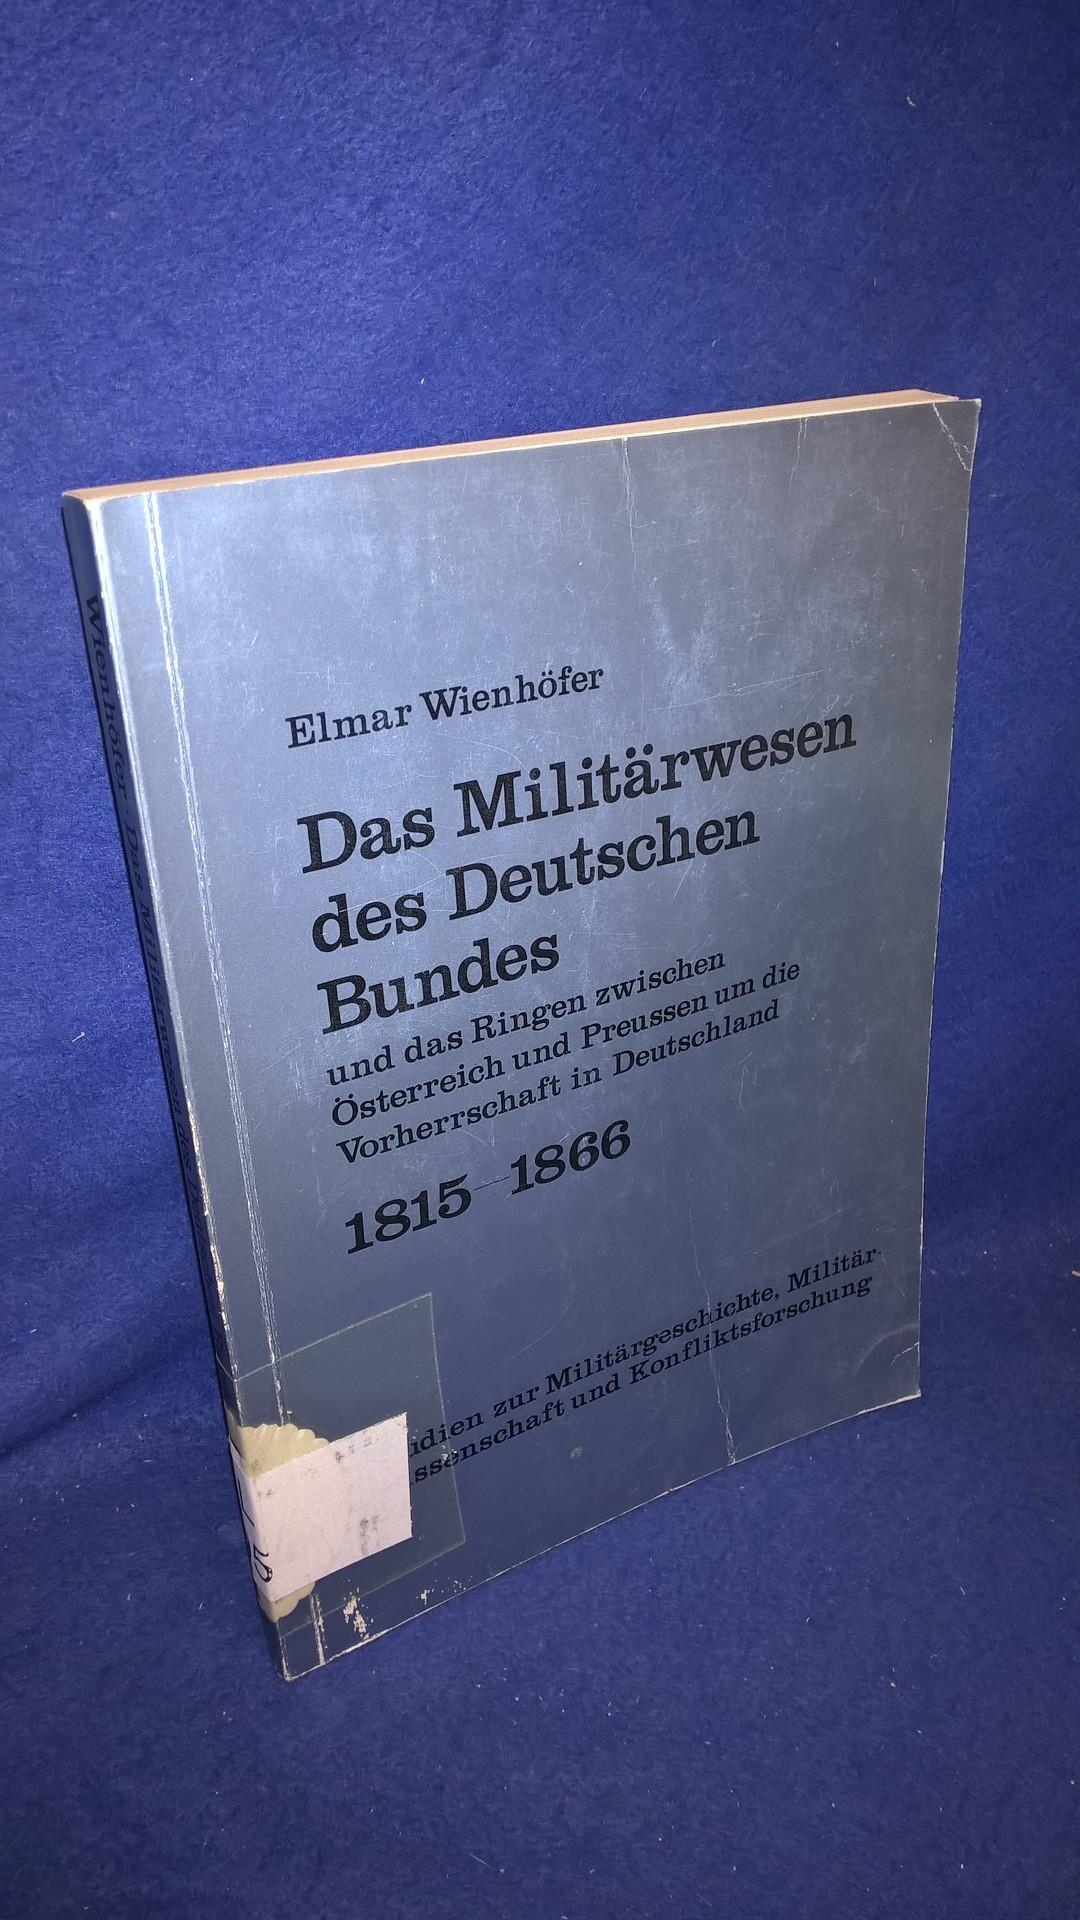 Das Militärwesen des Deutschen Bundes und das Ringen zwischen Österreich und Preussen um die vorherrschaft in Deutschland 1815-1866. 